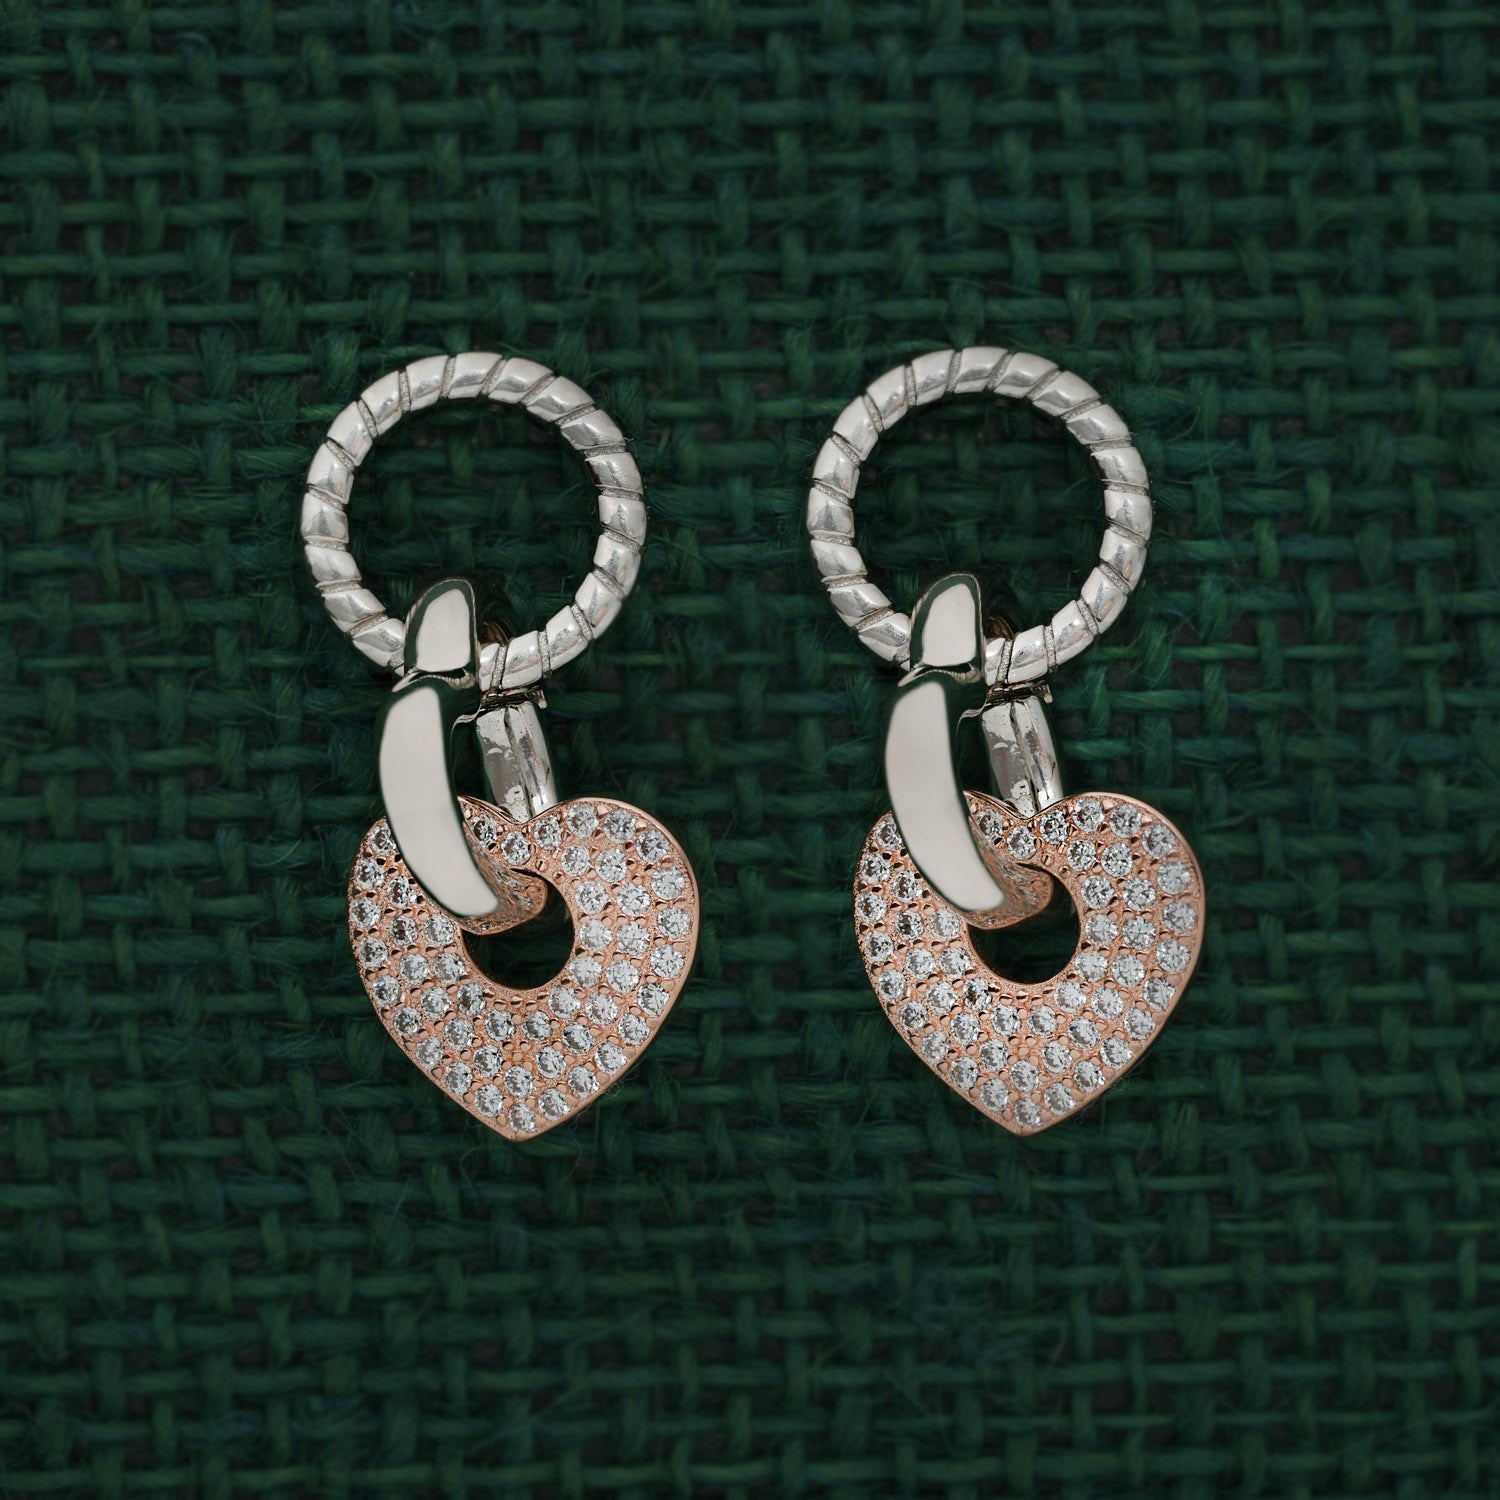 Dynamic Duo: Heart and Drop Earrings | SKU: 0019203584